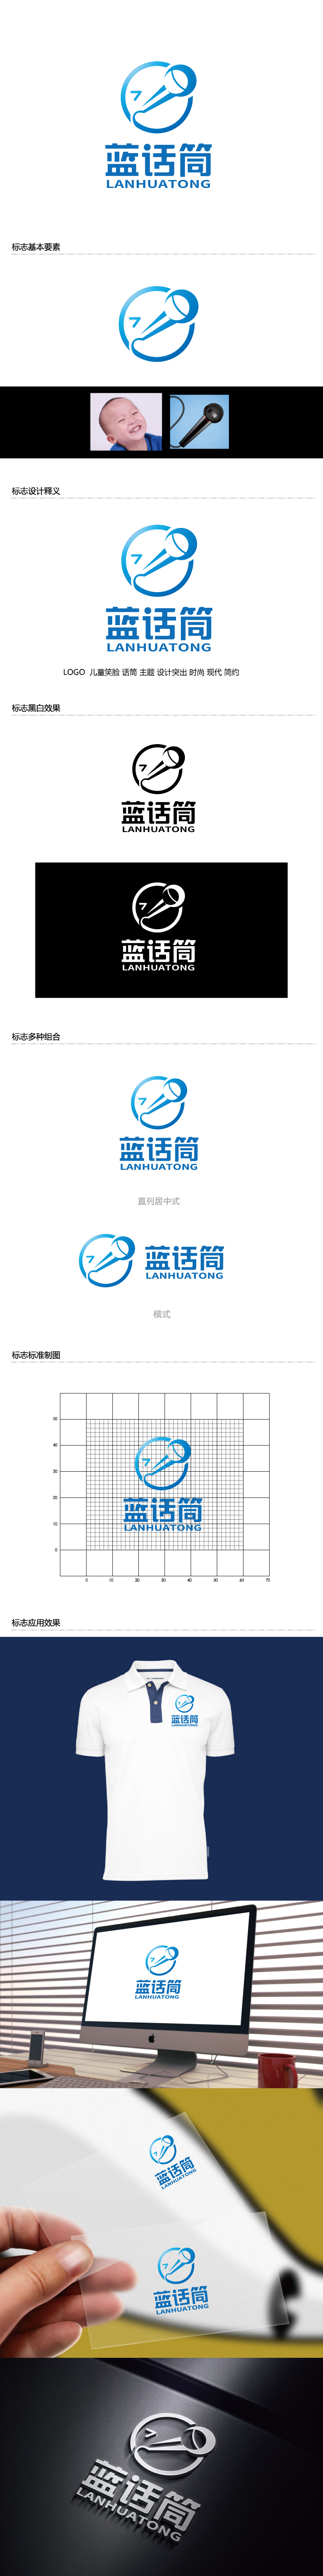 张俊的蓝话筒【重新整理设计需求】logo设计